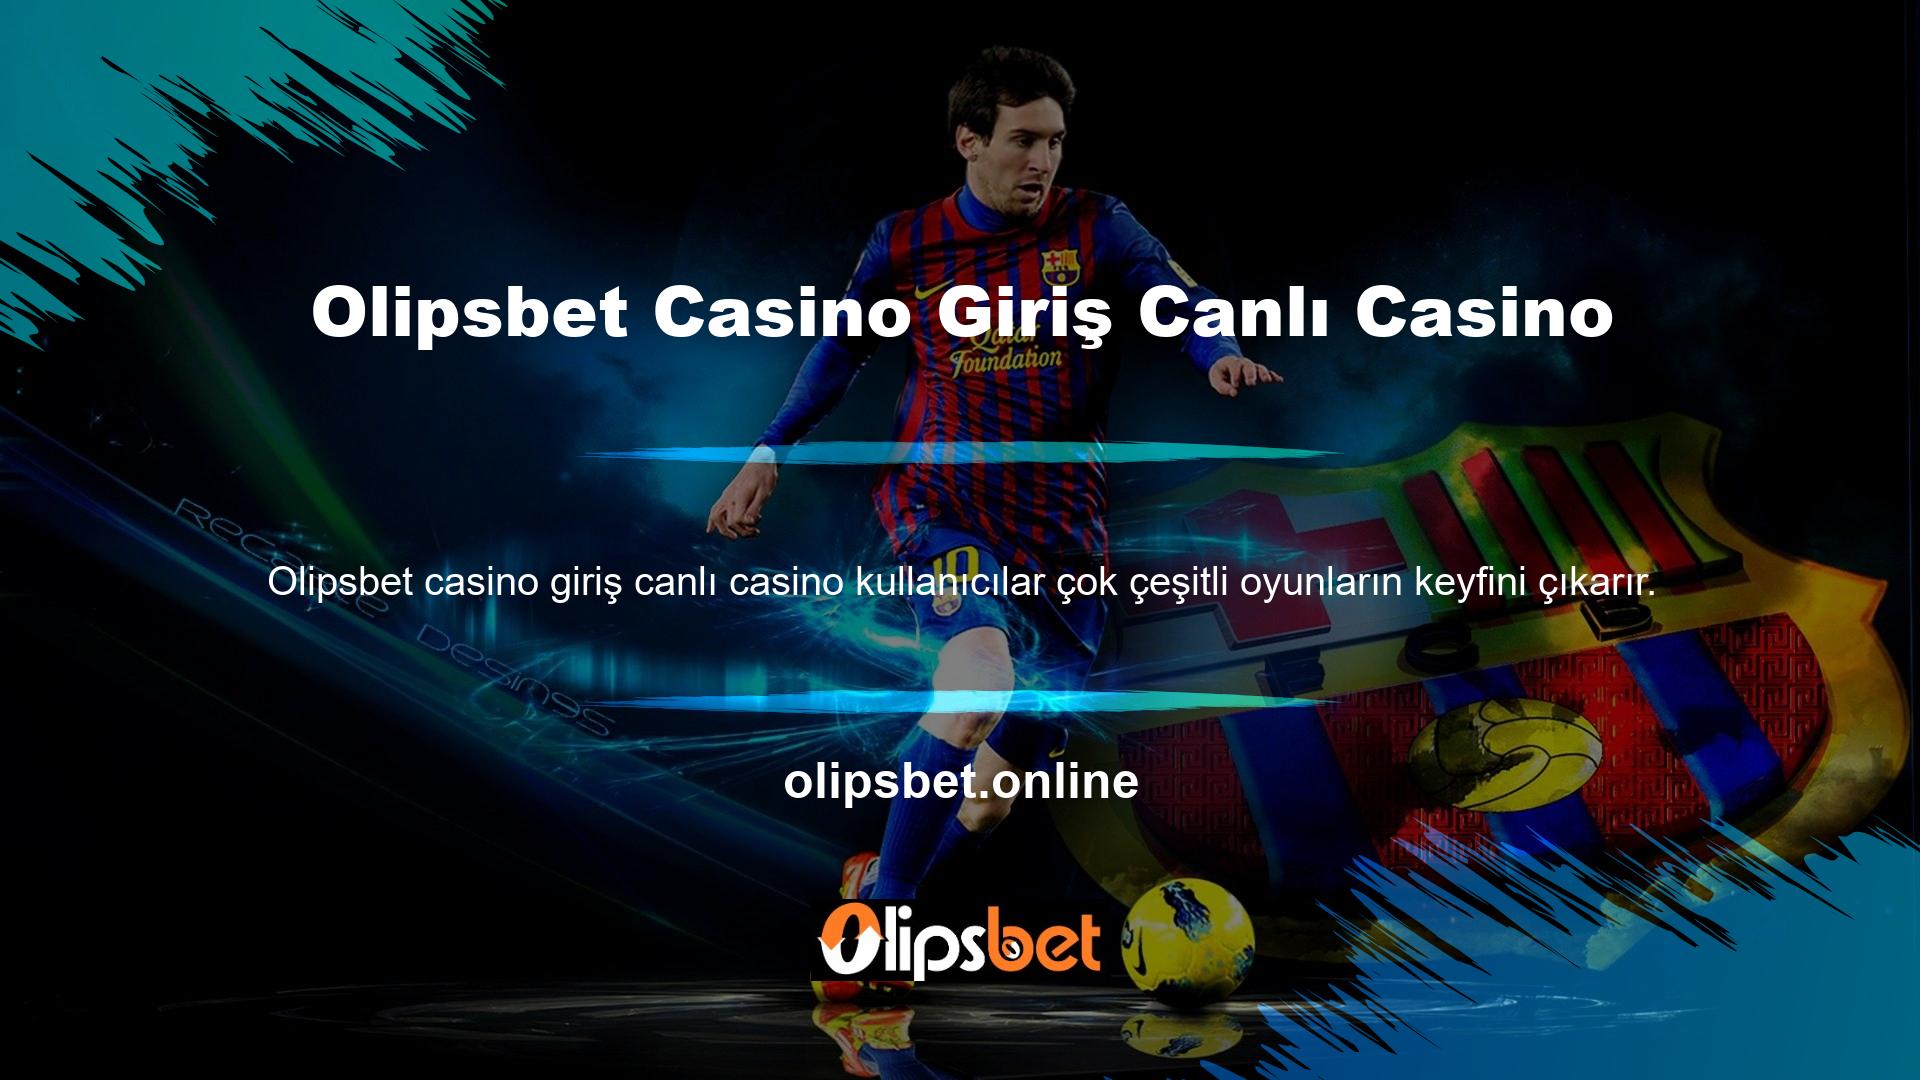 Olipsbet Casino Giriş Canlı Casino Giriş adresi, casino tutkunlarına oyunlarına anında erişim imkanı sağlar